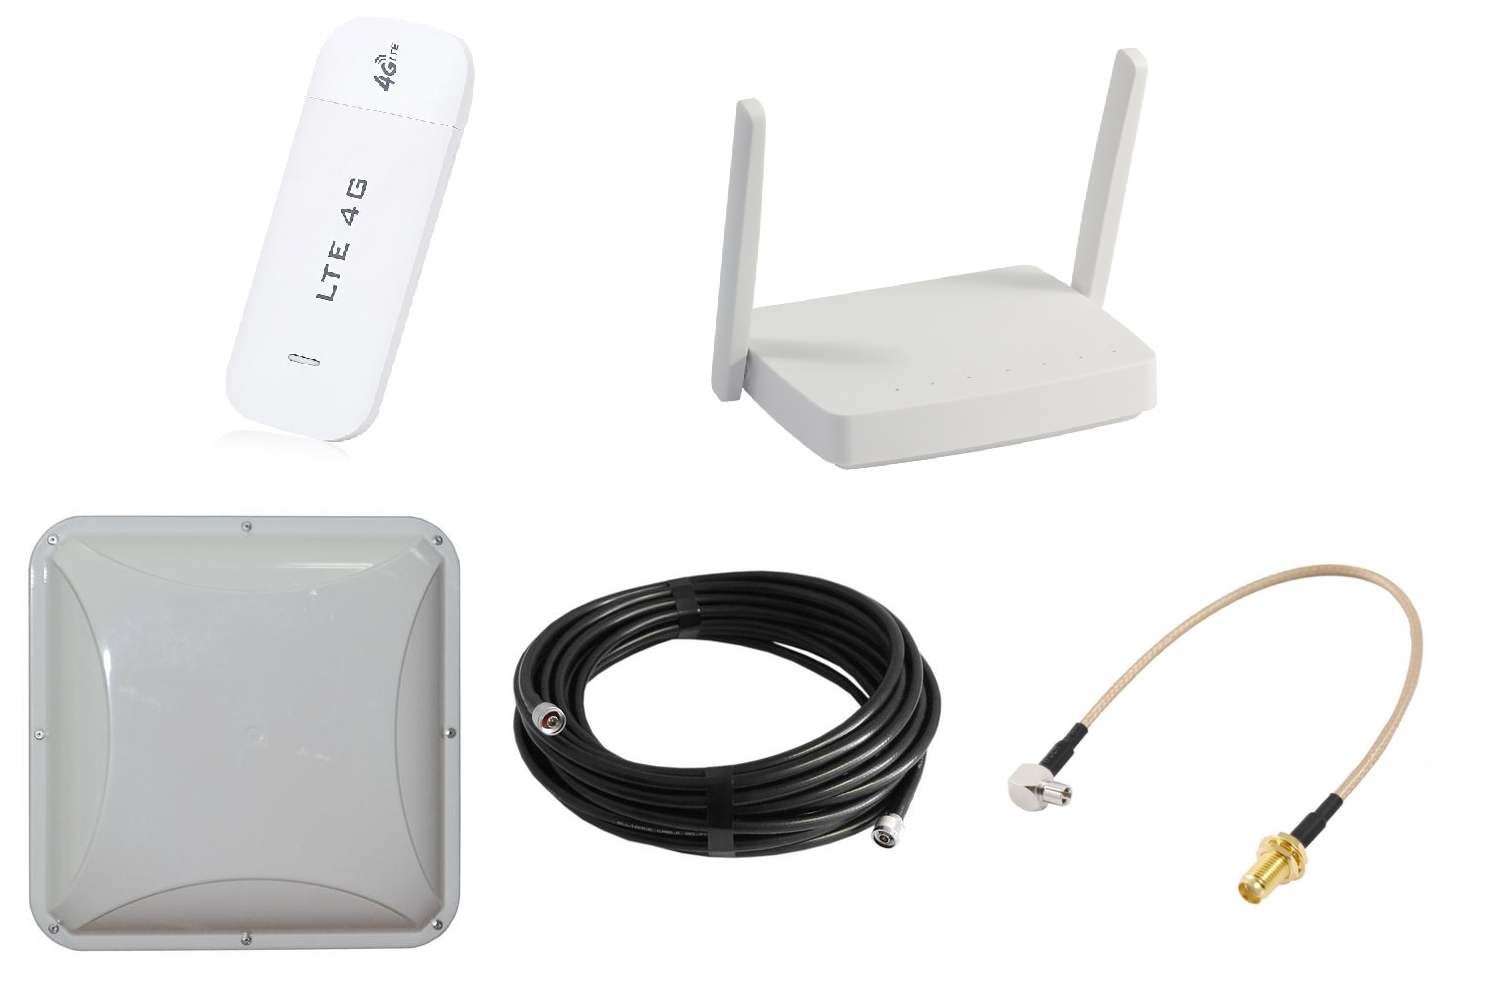 Интернет для модемов и роутеров. Антенна комнатная VEGATEL Ant-700/2700-Pi (Тип а). GSM модем 3g/4g/LTE. 4g USB-модем, Wi-Fi-роутер. USB 4g модем с внешней антенной.